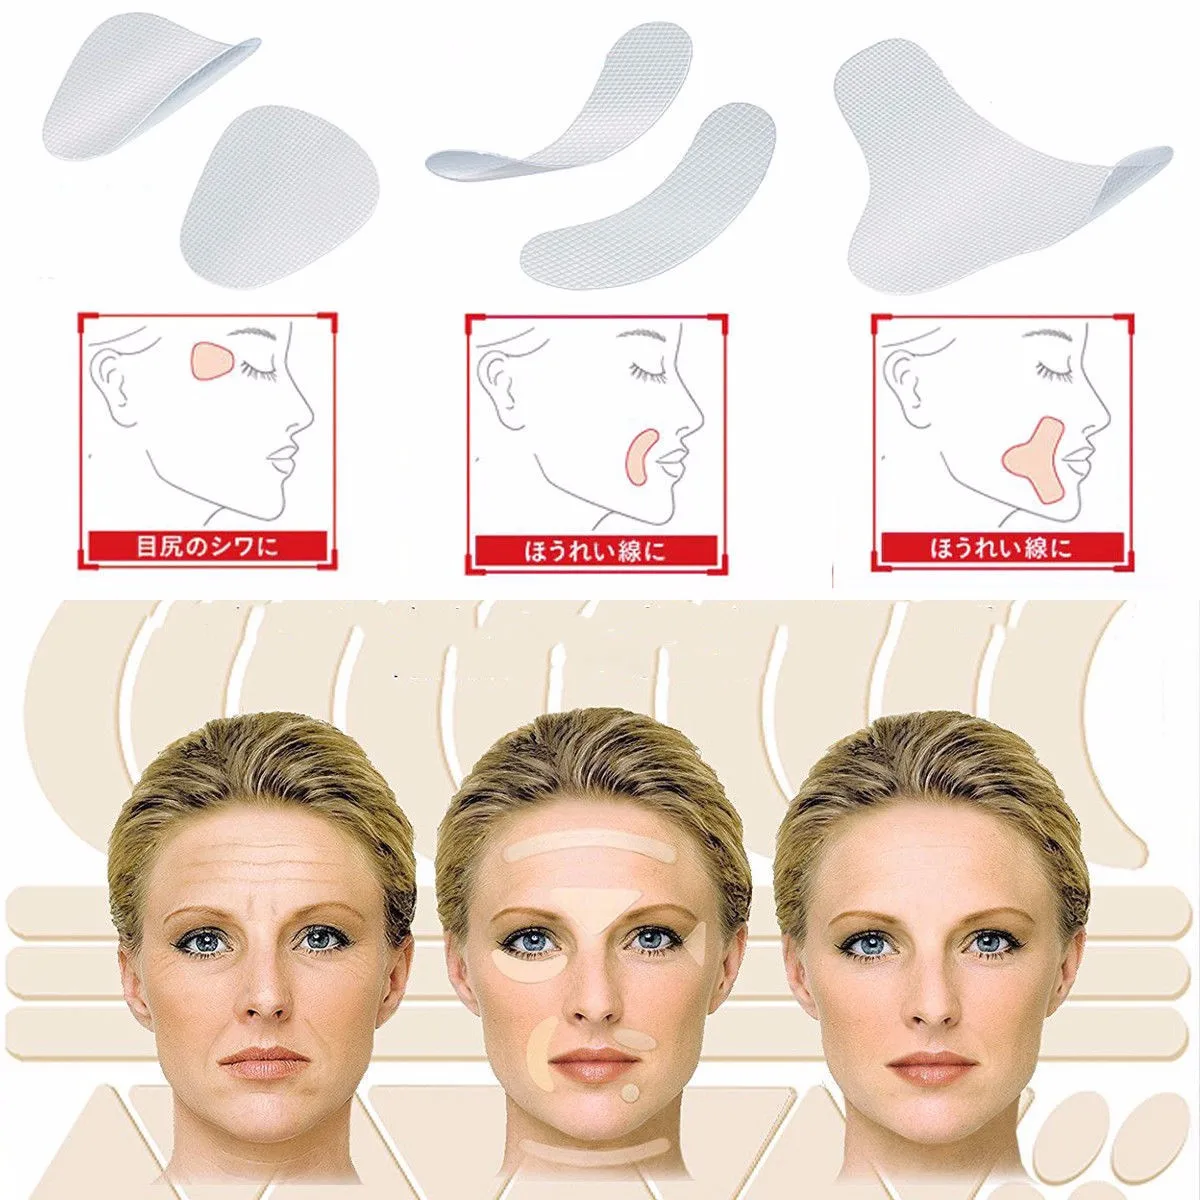 ELECOOL 0,02 мм V-shape Lift Face sticker 40 шт. тонкий артефакт для лица Невидимый стикер медицинская лента для макияжа инструмент для подтяжки лица BTZ1